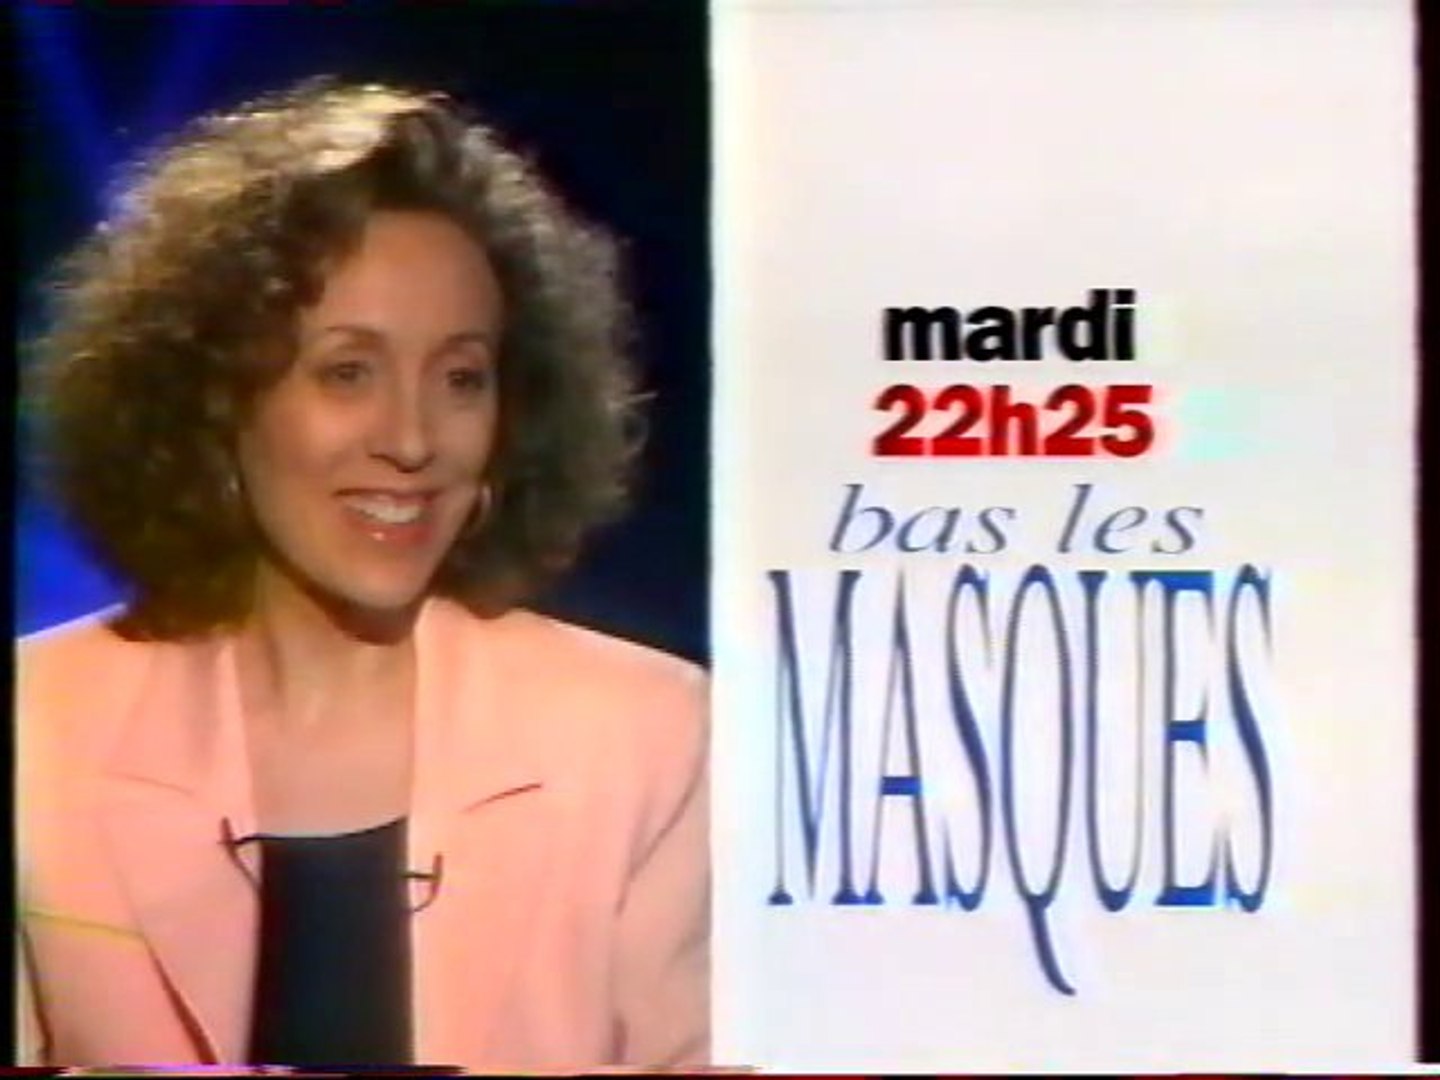 Bande Annonce De L'emission Bas Les Masques Mars 1994 F2 - Vidéo Dailymotion